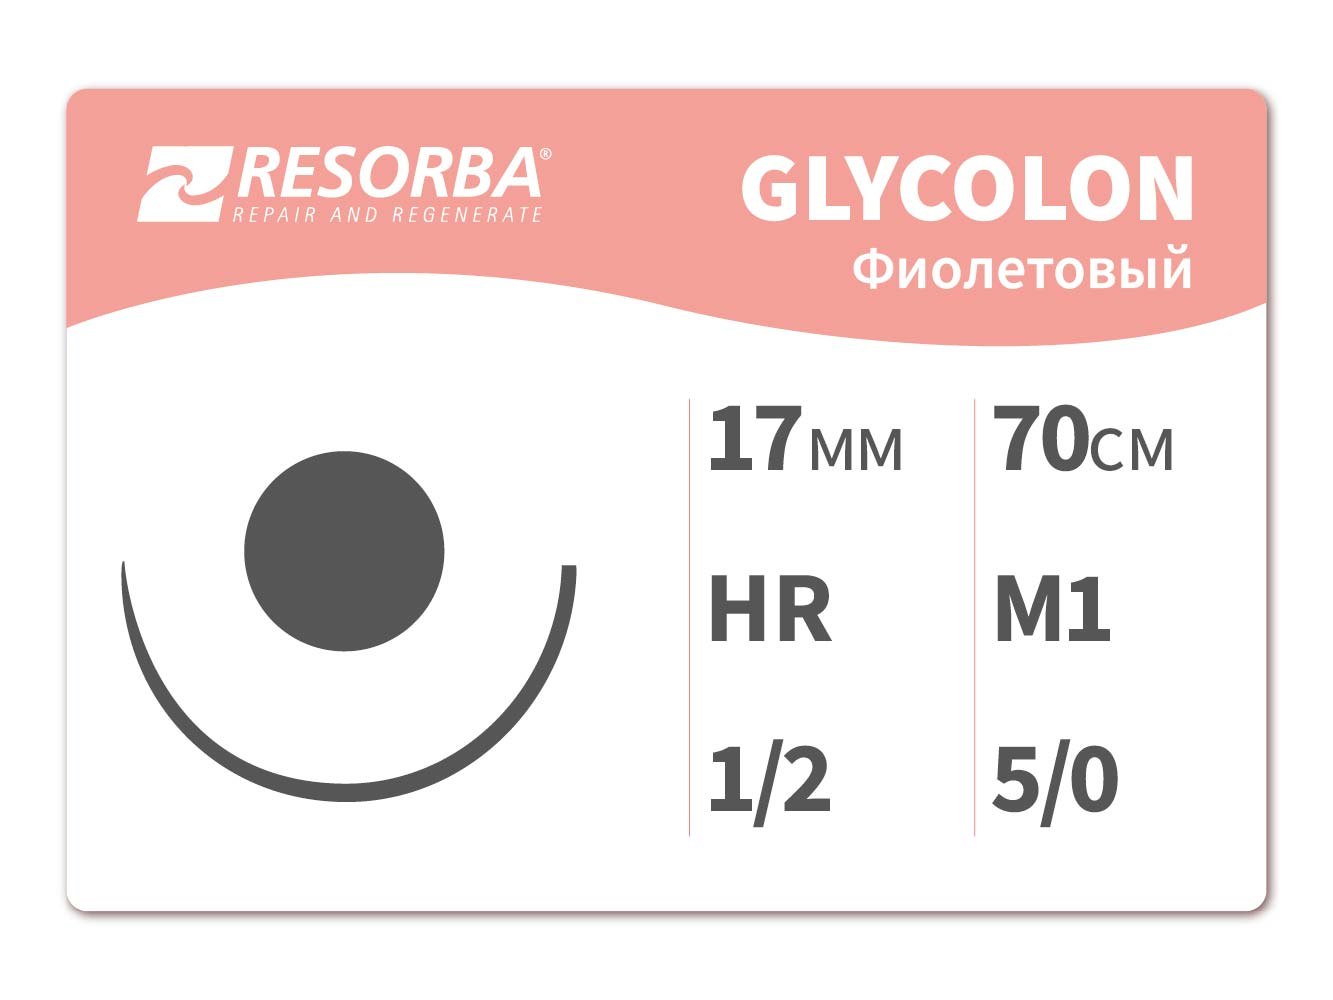 40201 Гликолон фиолетовый М1, (5/0), 70см, HR 17.PB, Ресорба/RESORBA (Германия)